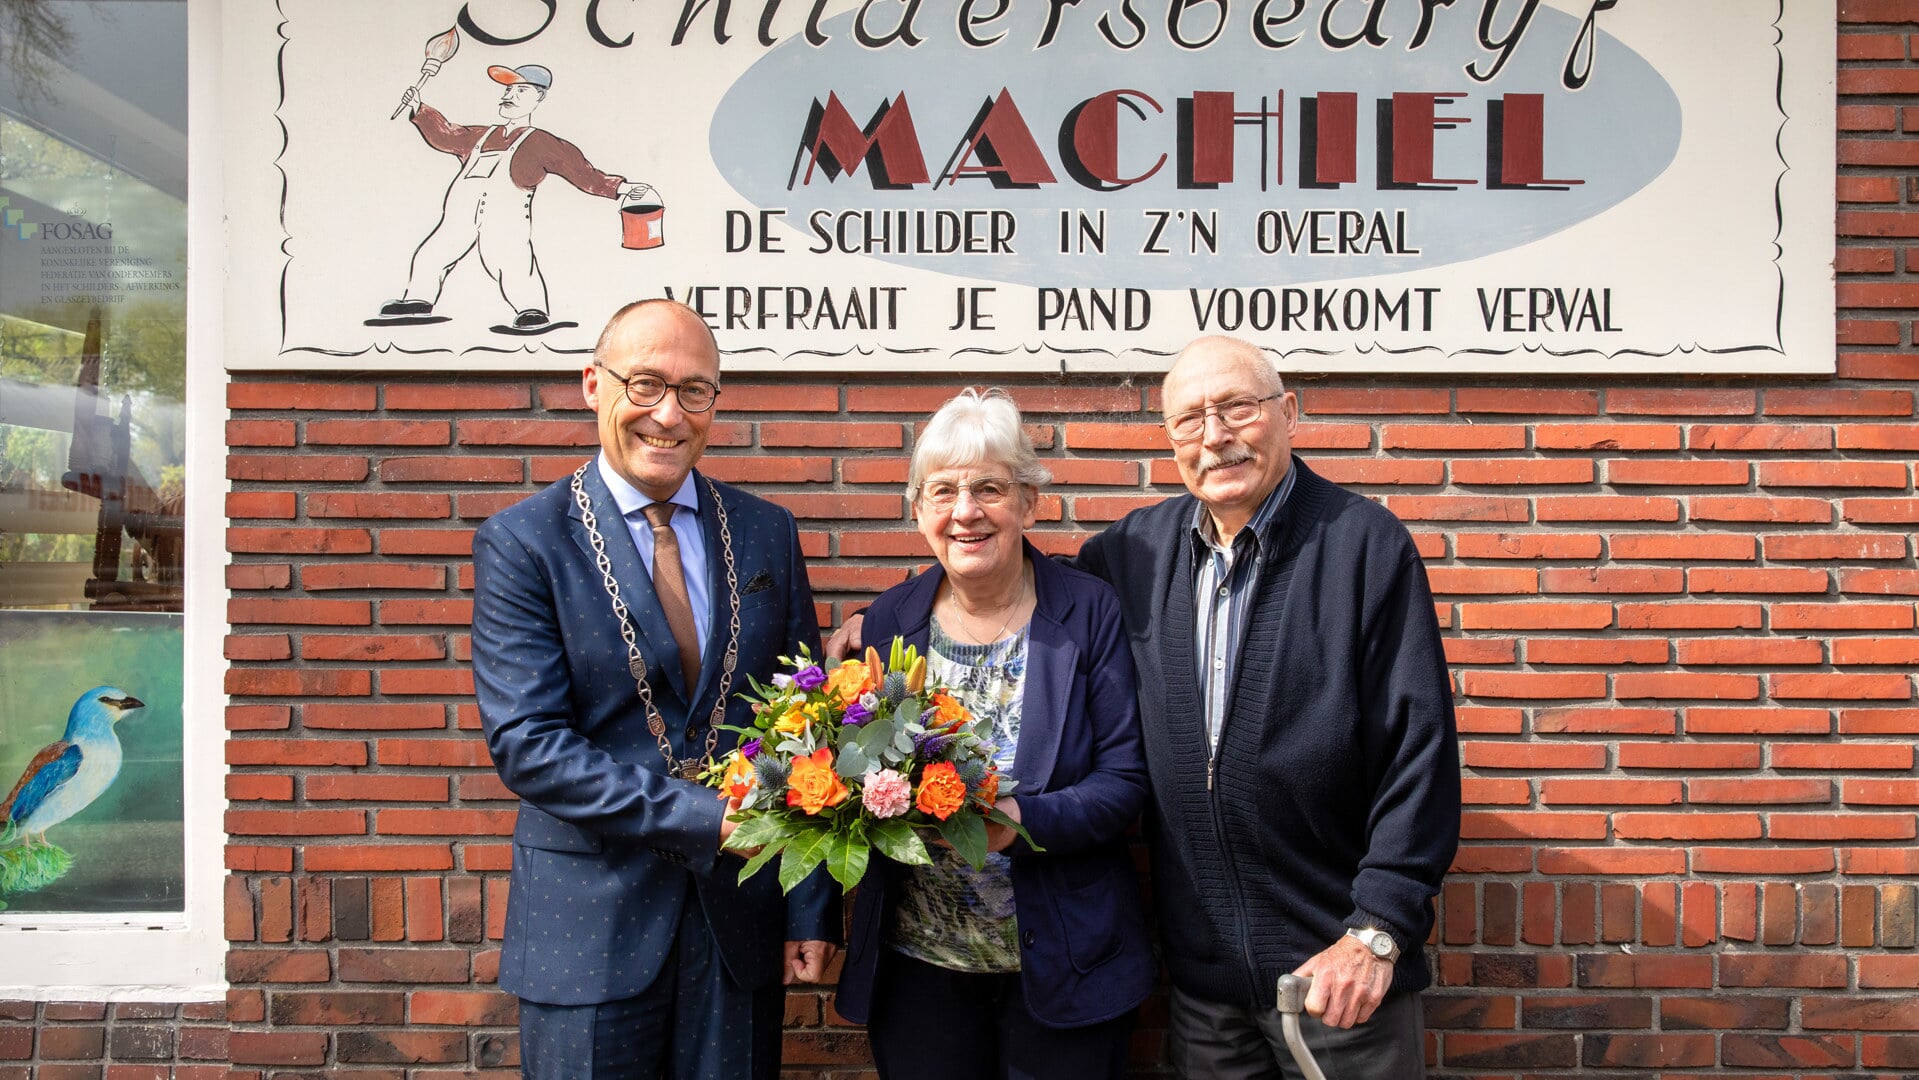 Het echtpaar Machiel werd gefeliciteerd door burgemeester Hiemstra met hun briljanten huwelijksfeest. 